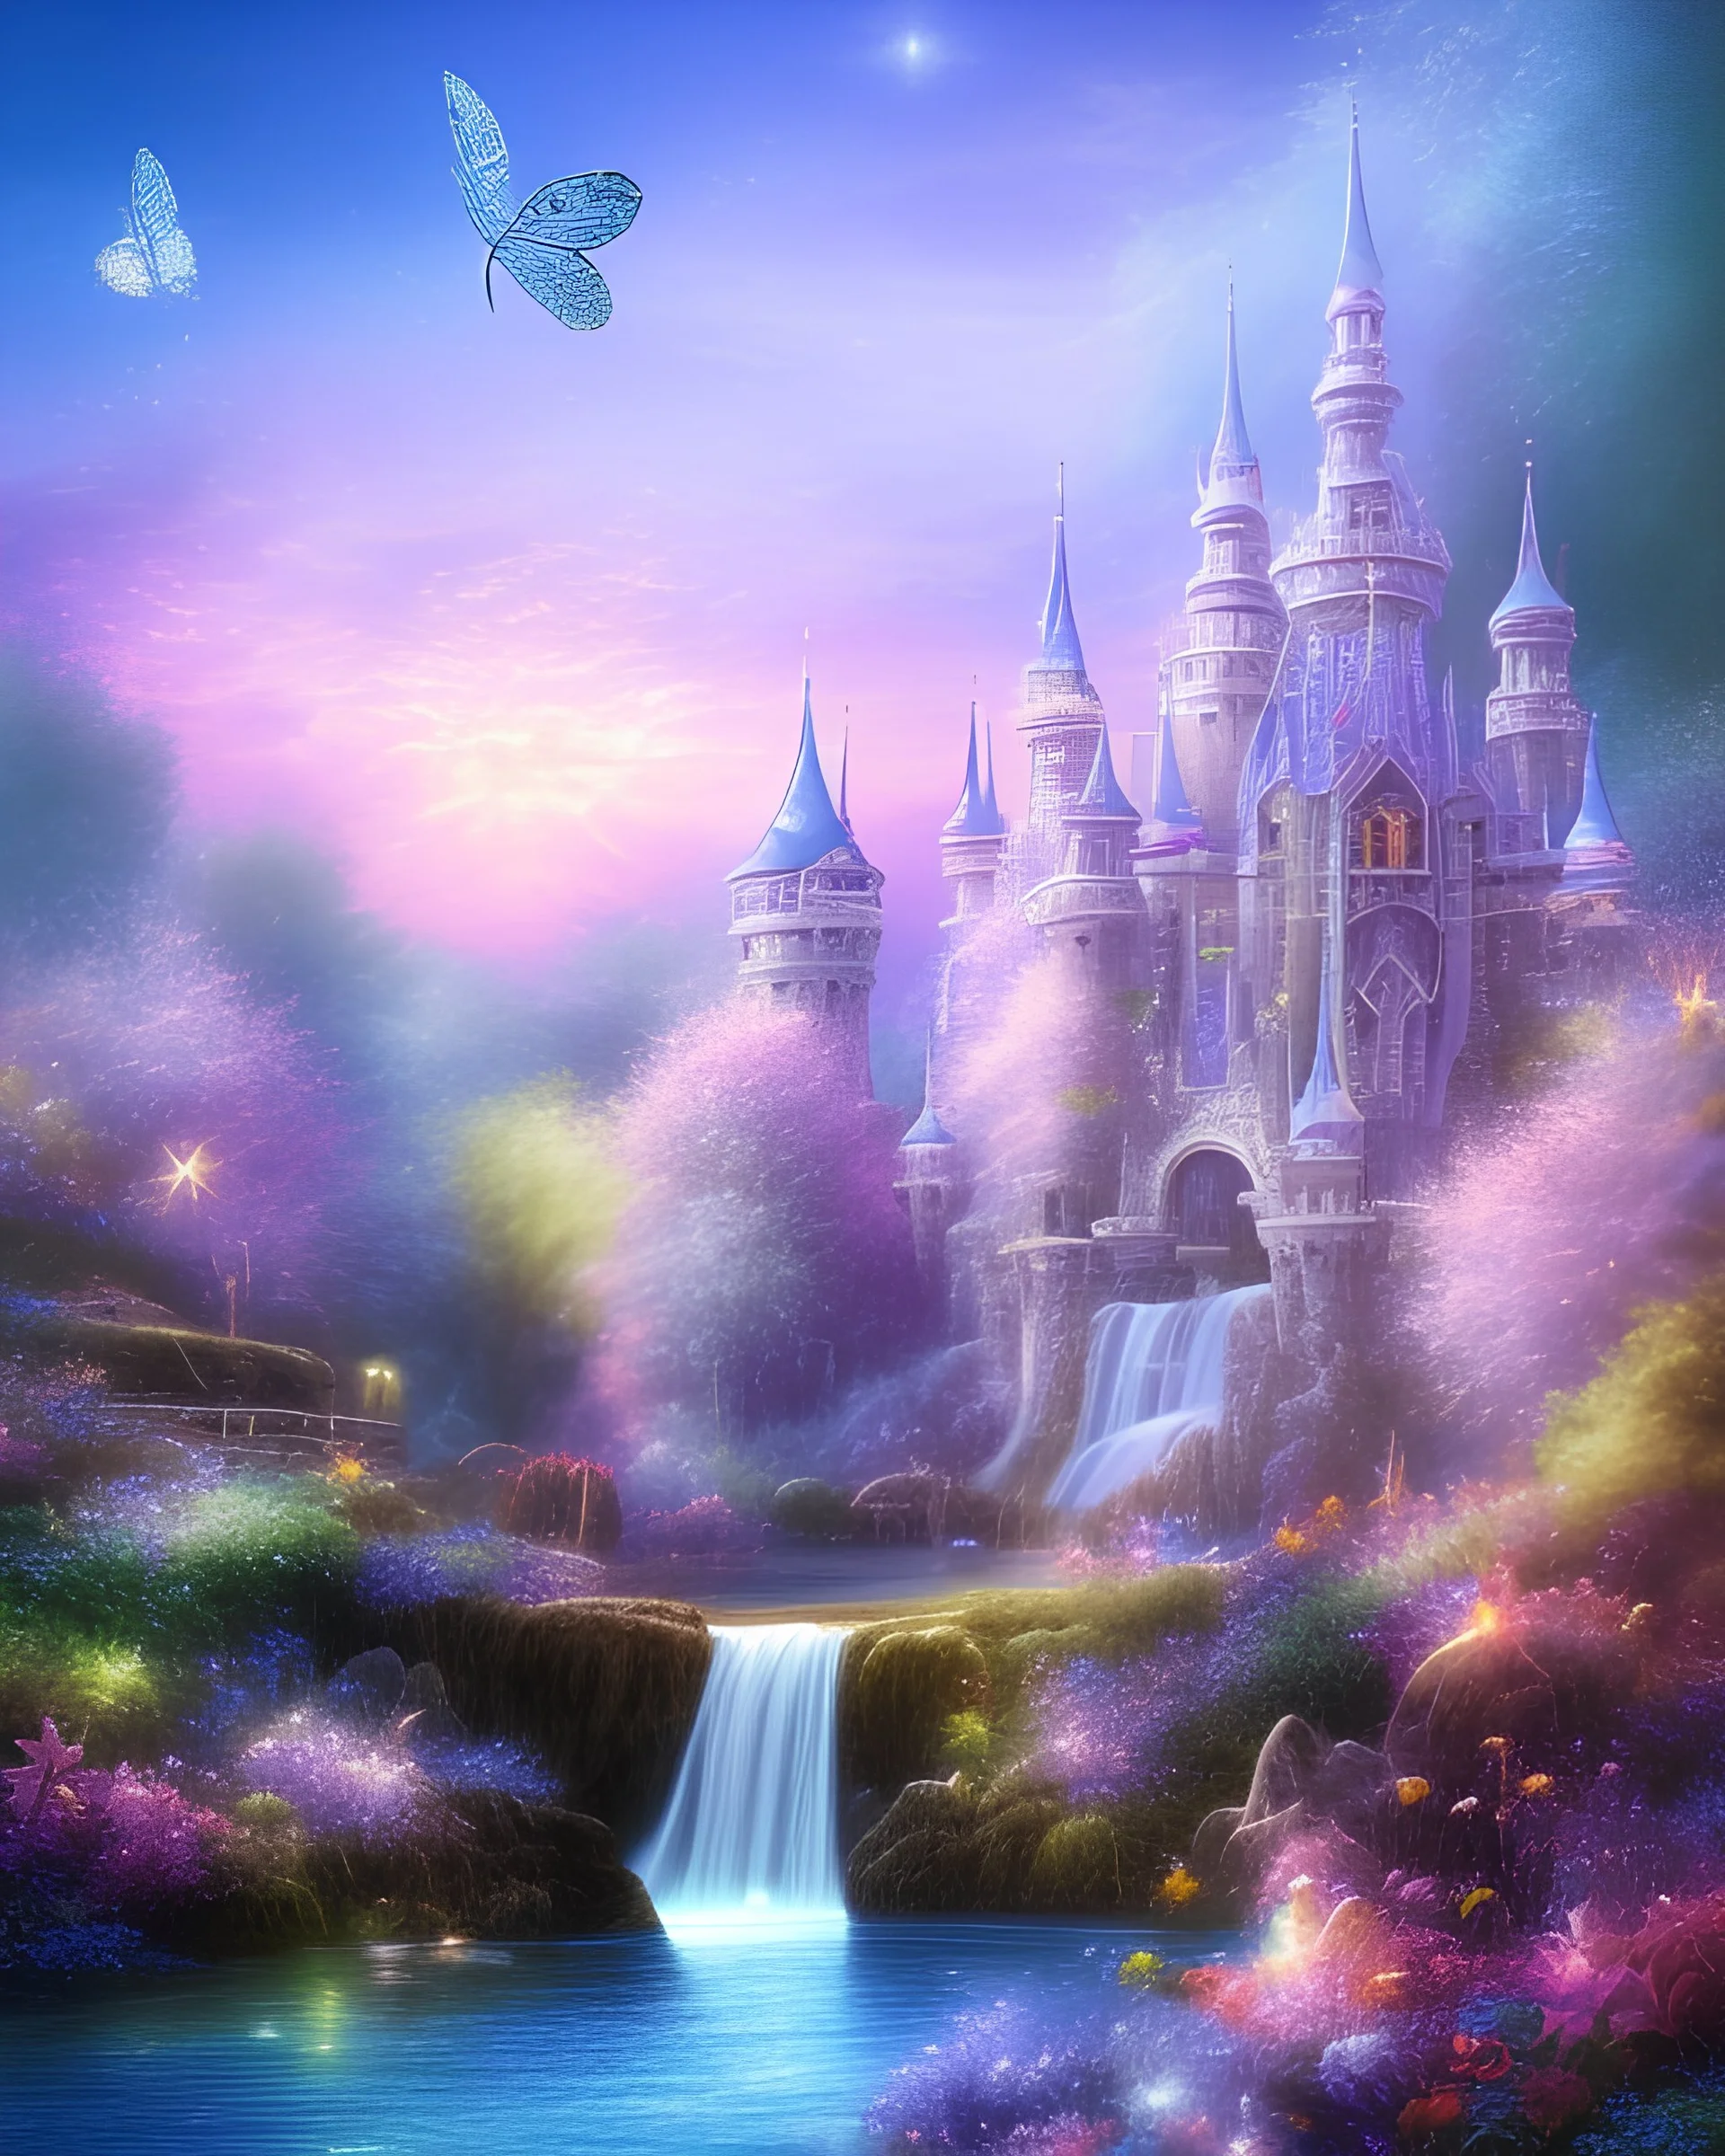 chateau bleu or mauve rose, étoiles, glossy, très belle nature, flowers, cascades,papillons, etoiles, champignons, fées tres magiques